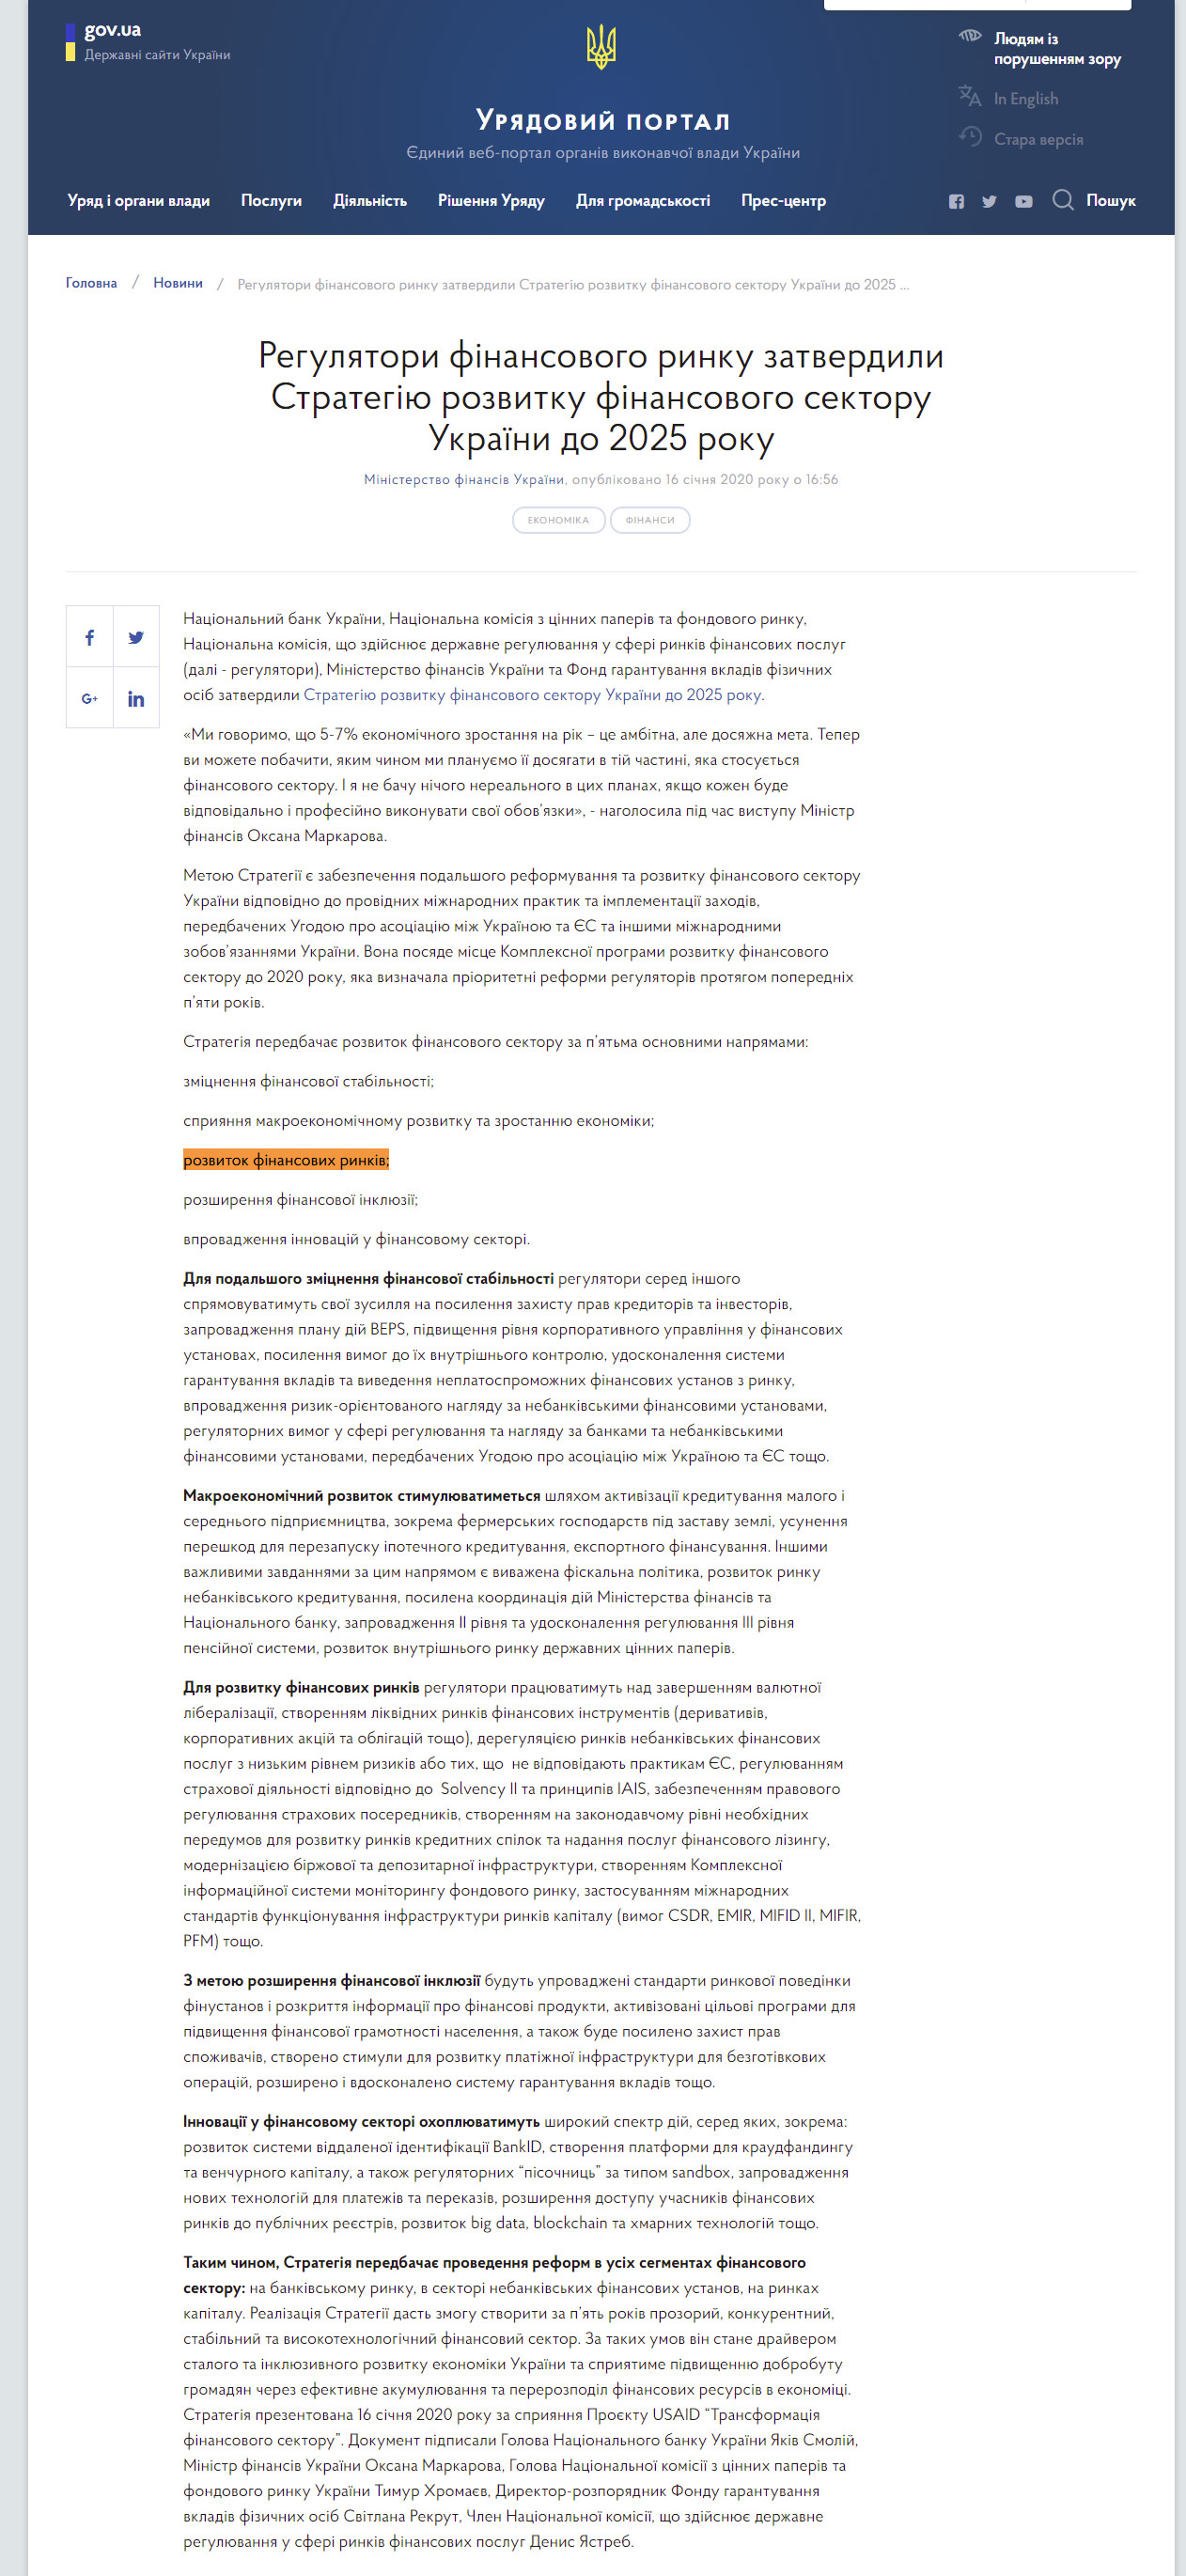 https://www.kmu.gov.ua/news/regulyatori-finansovogo-rinku-zatverdili-strategiyu-rozvitku-finansovogo-sektoru-ukrayini-do-2025-roku